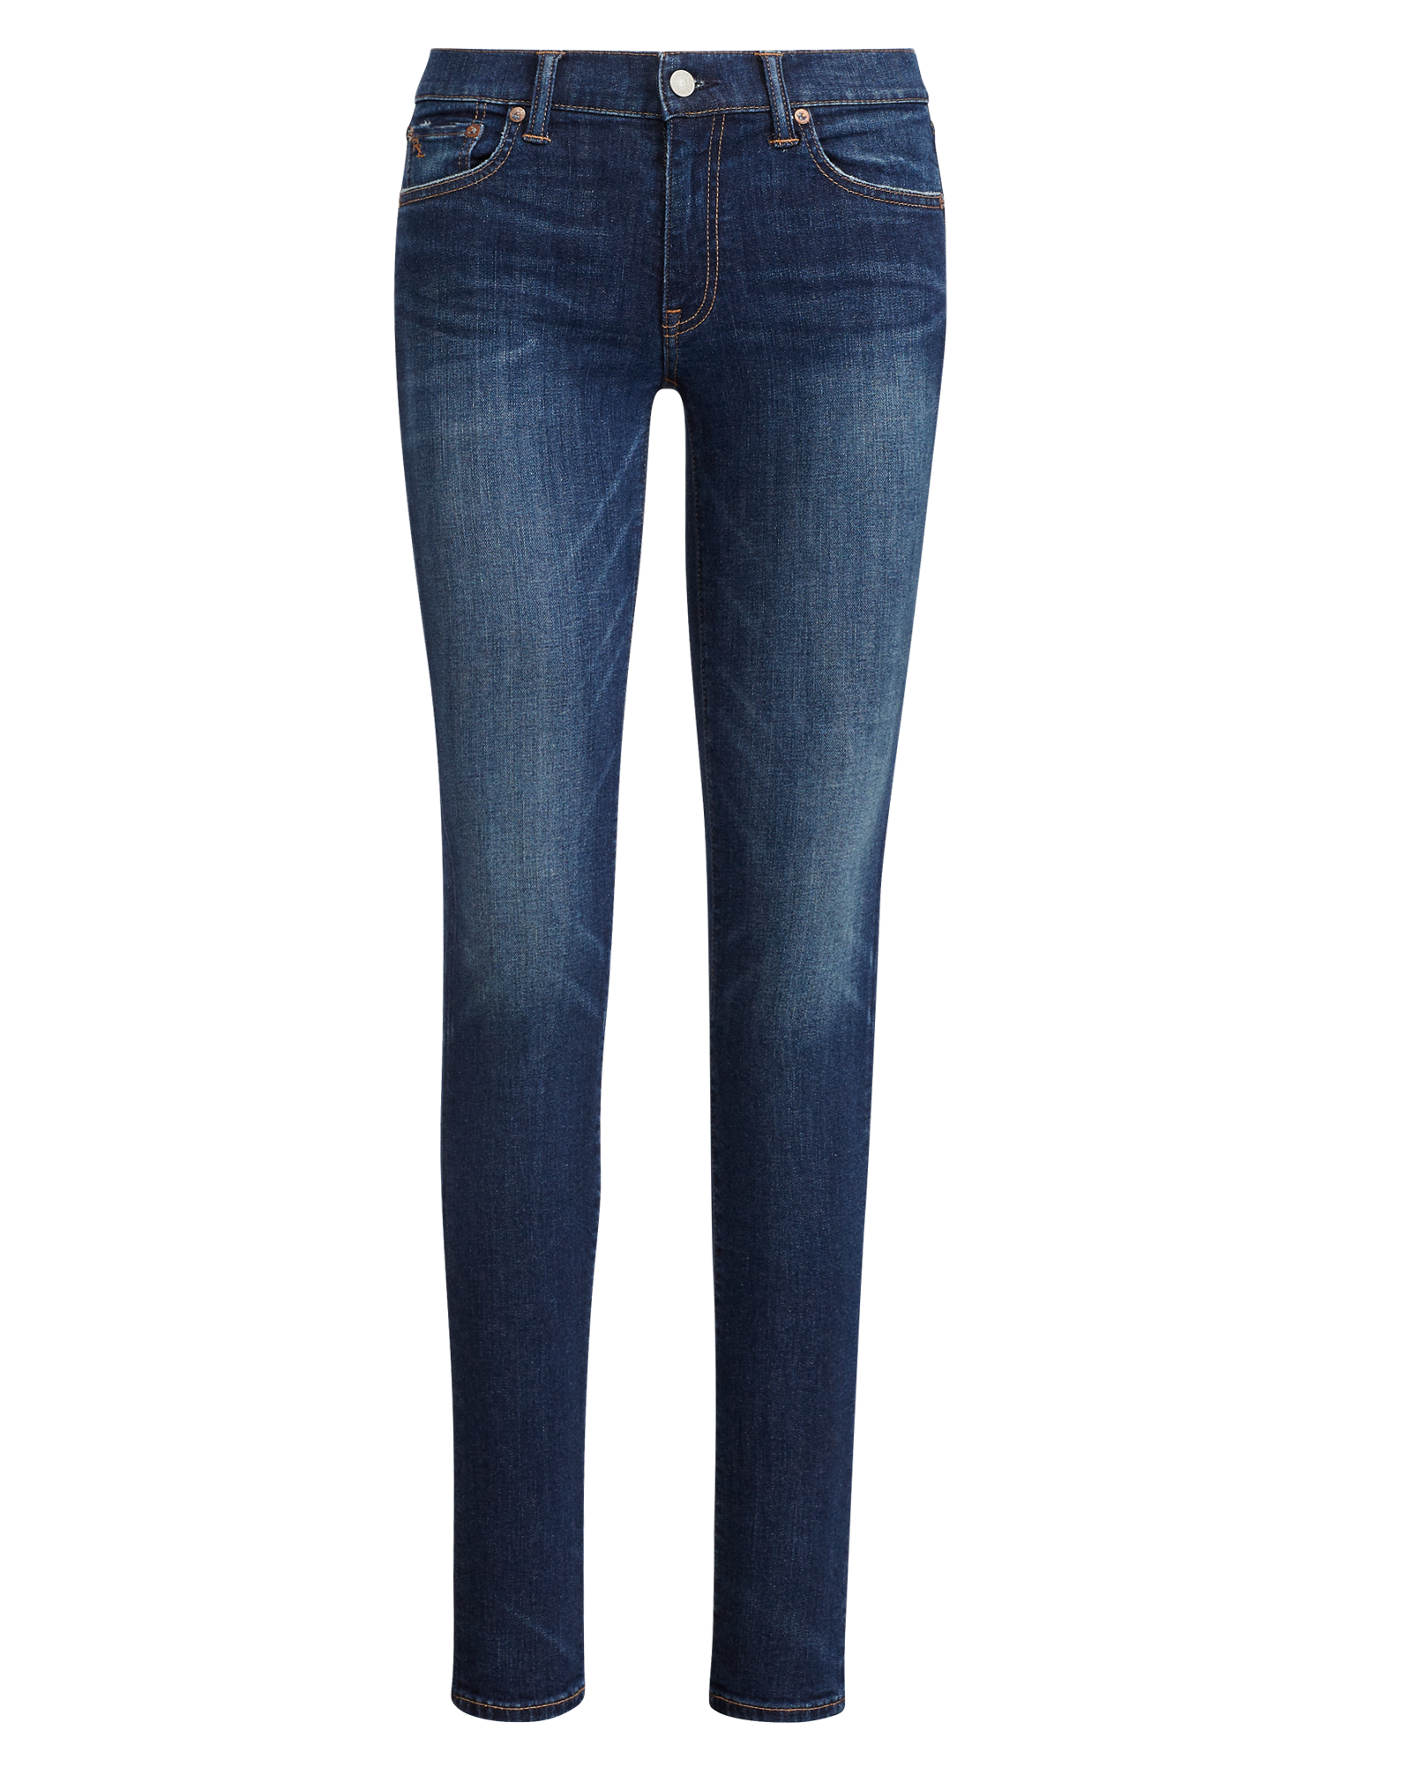 Skinny Jeans for Women - Skinny Denim | Ralph Lauren